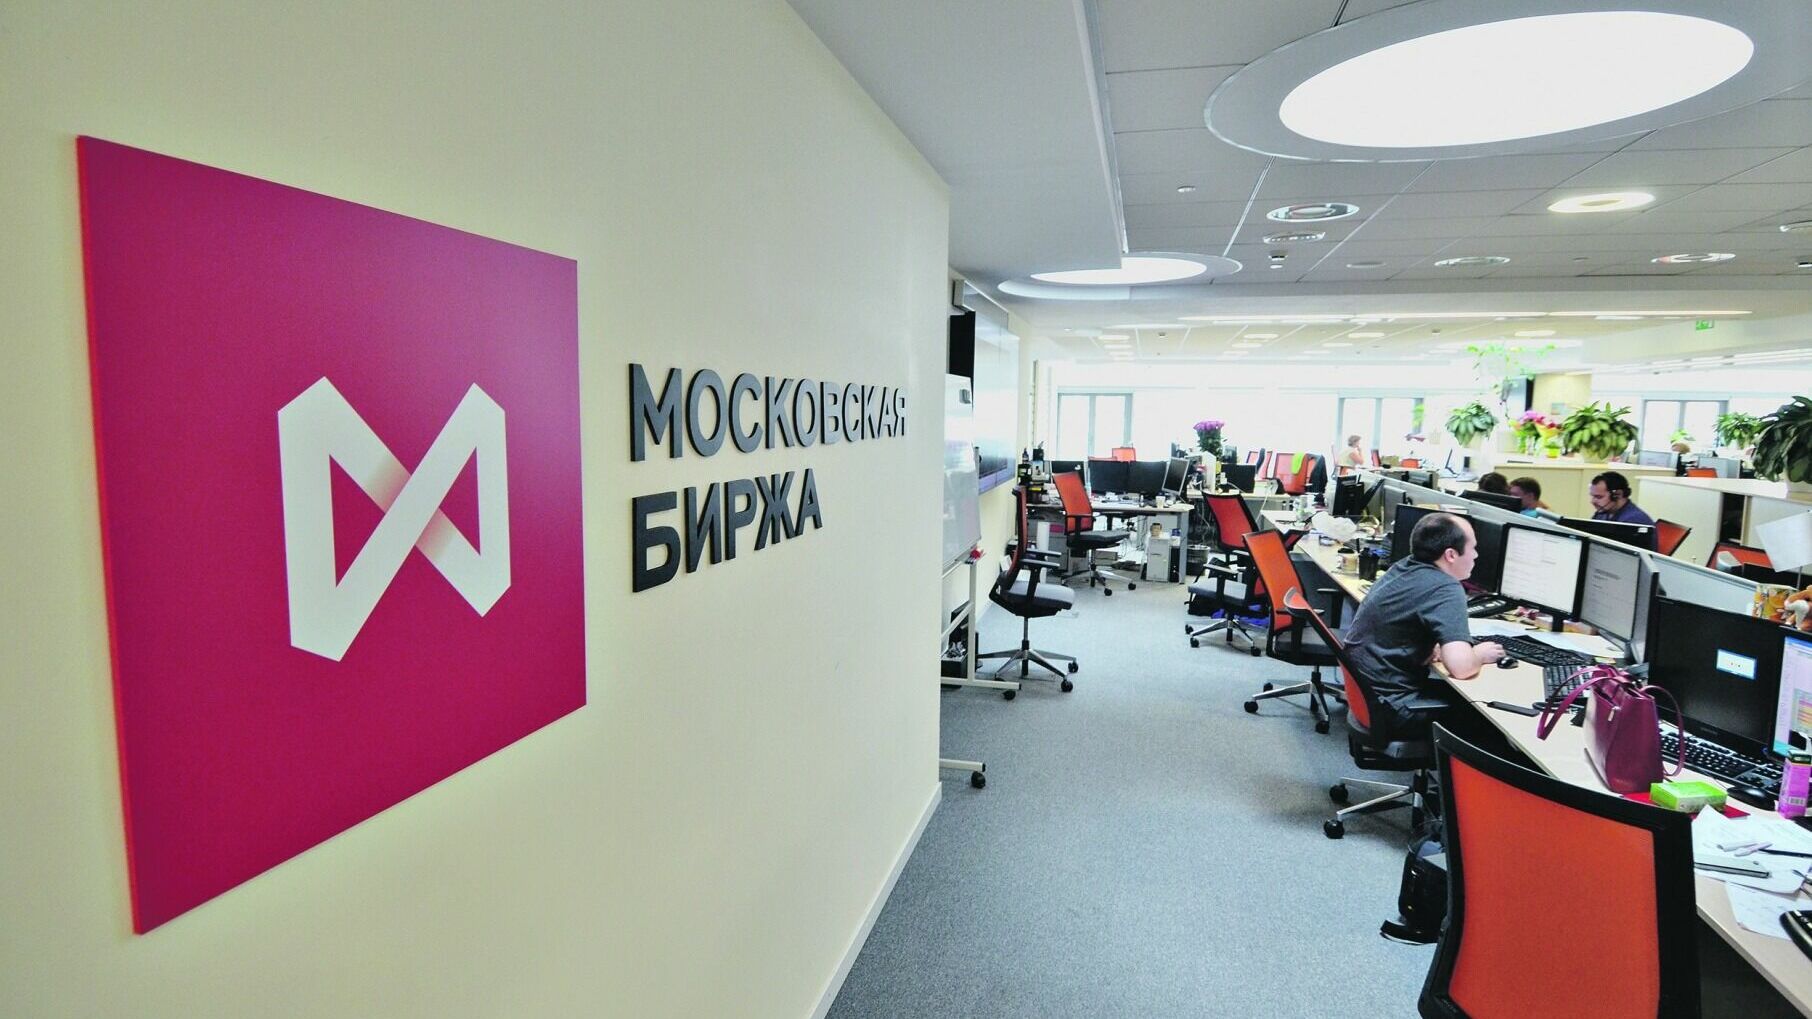 Объем торгов на Мосбирже вырос до 1,1 квадриллиона рублей